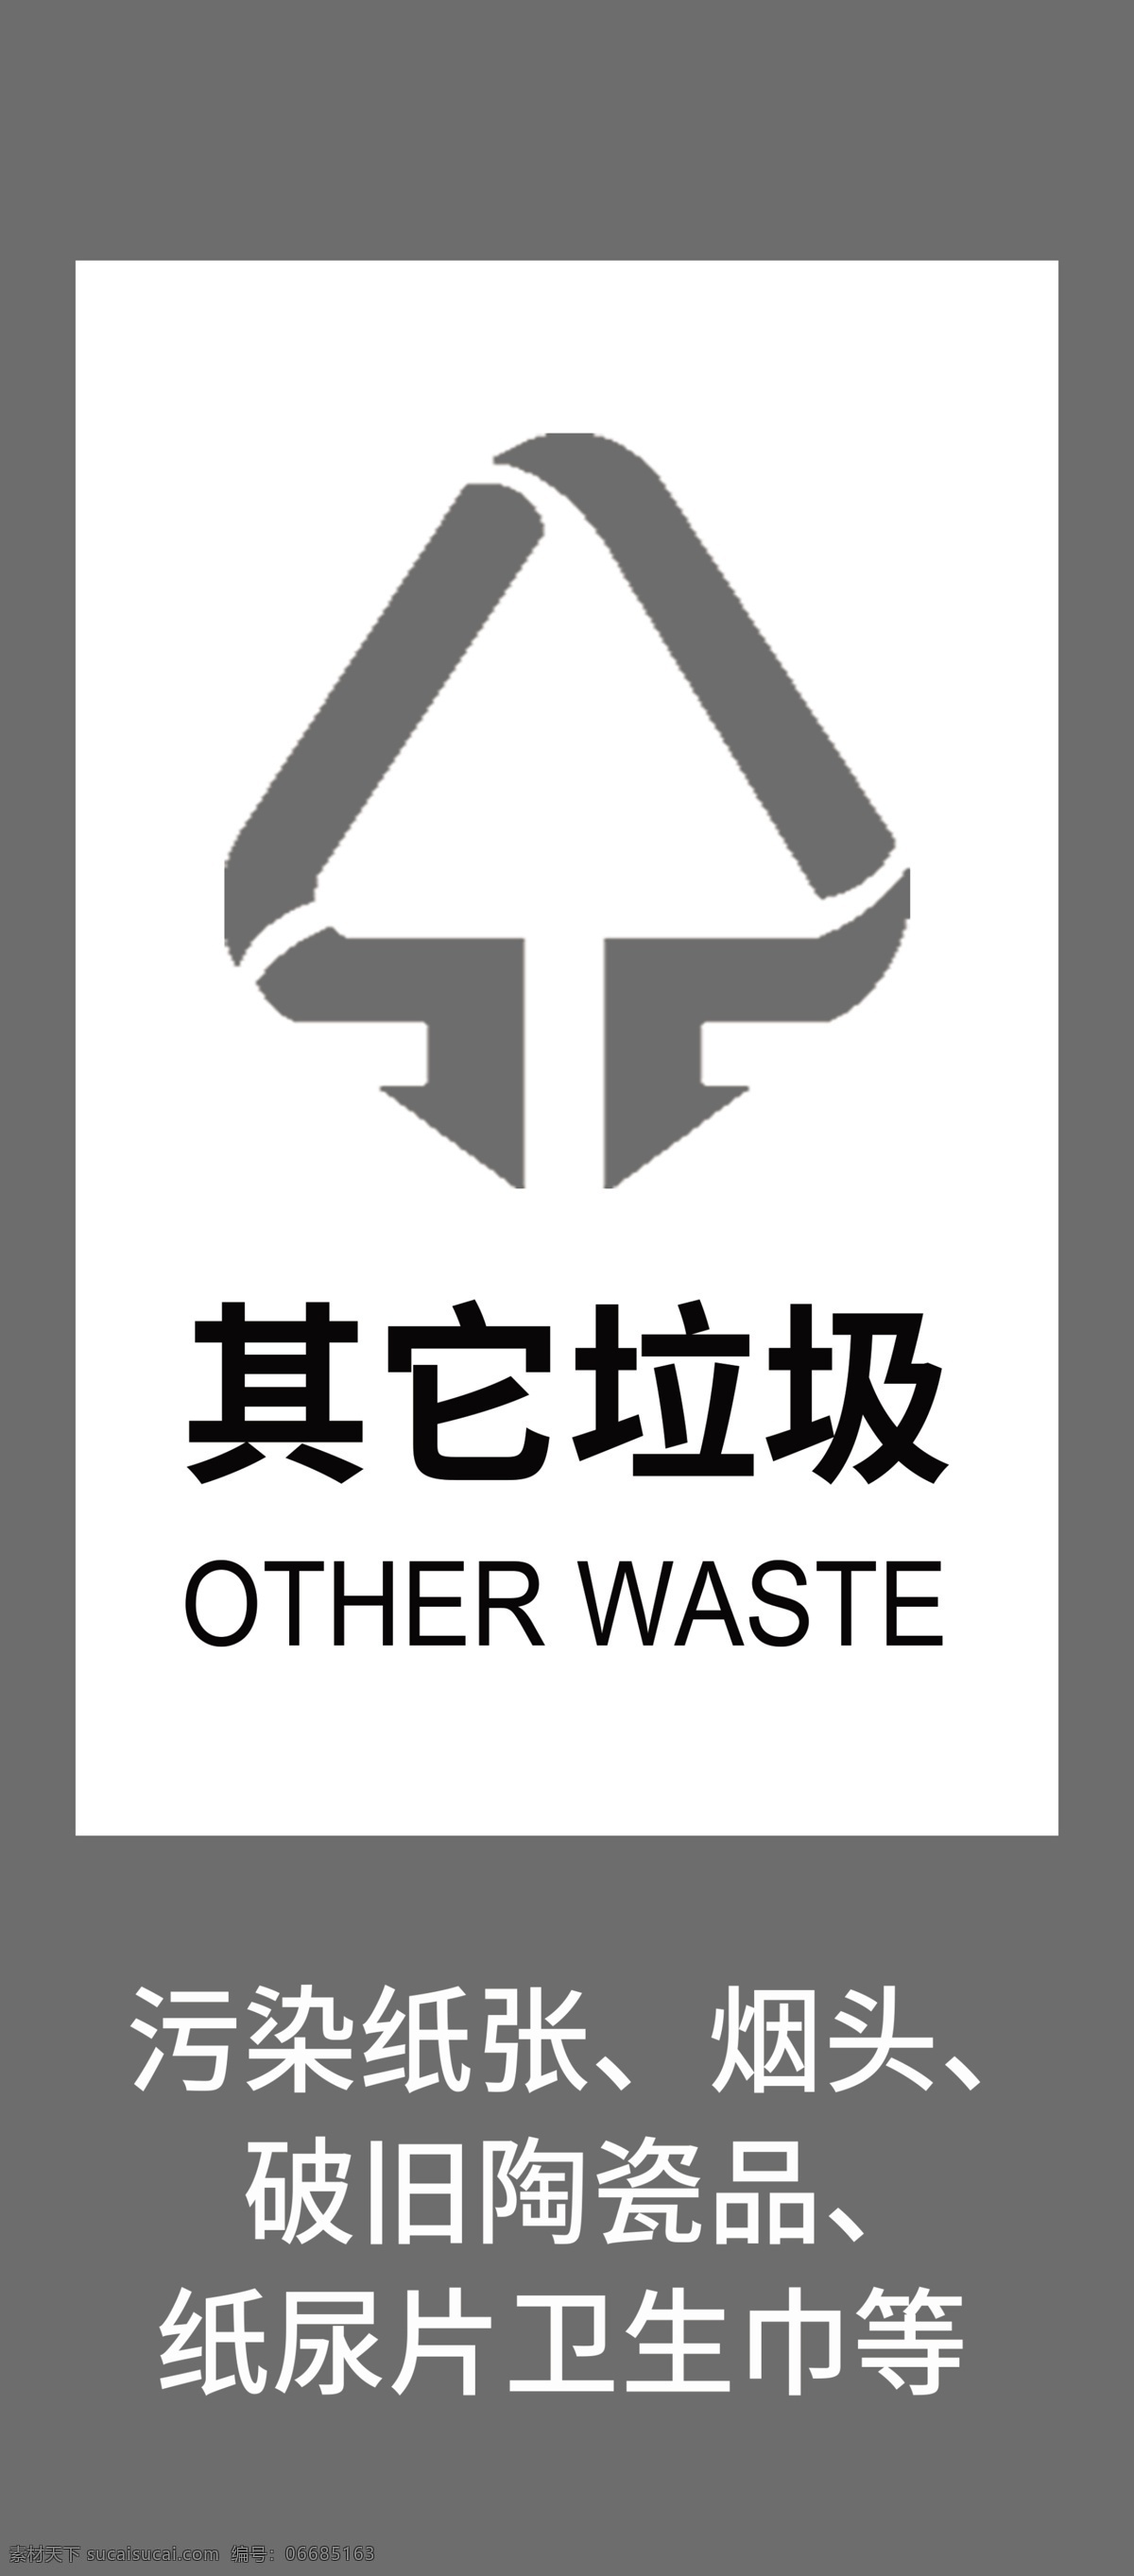 垃圾分类 公共标识 有害 垃圾 垃圾桶标识 环境保护 废电池 分层